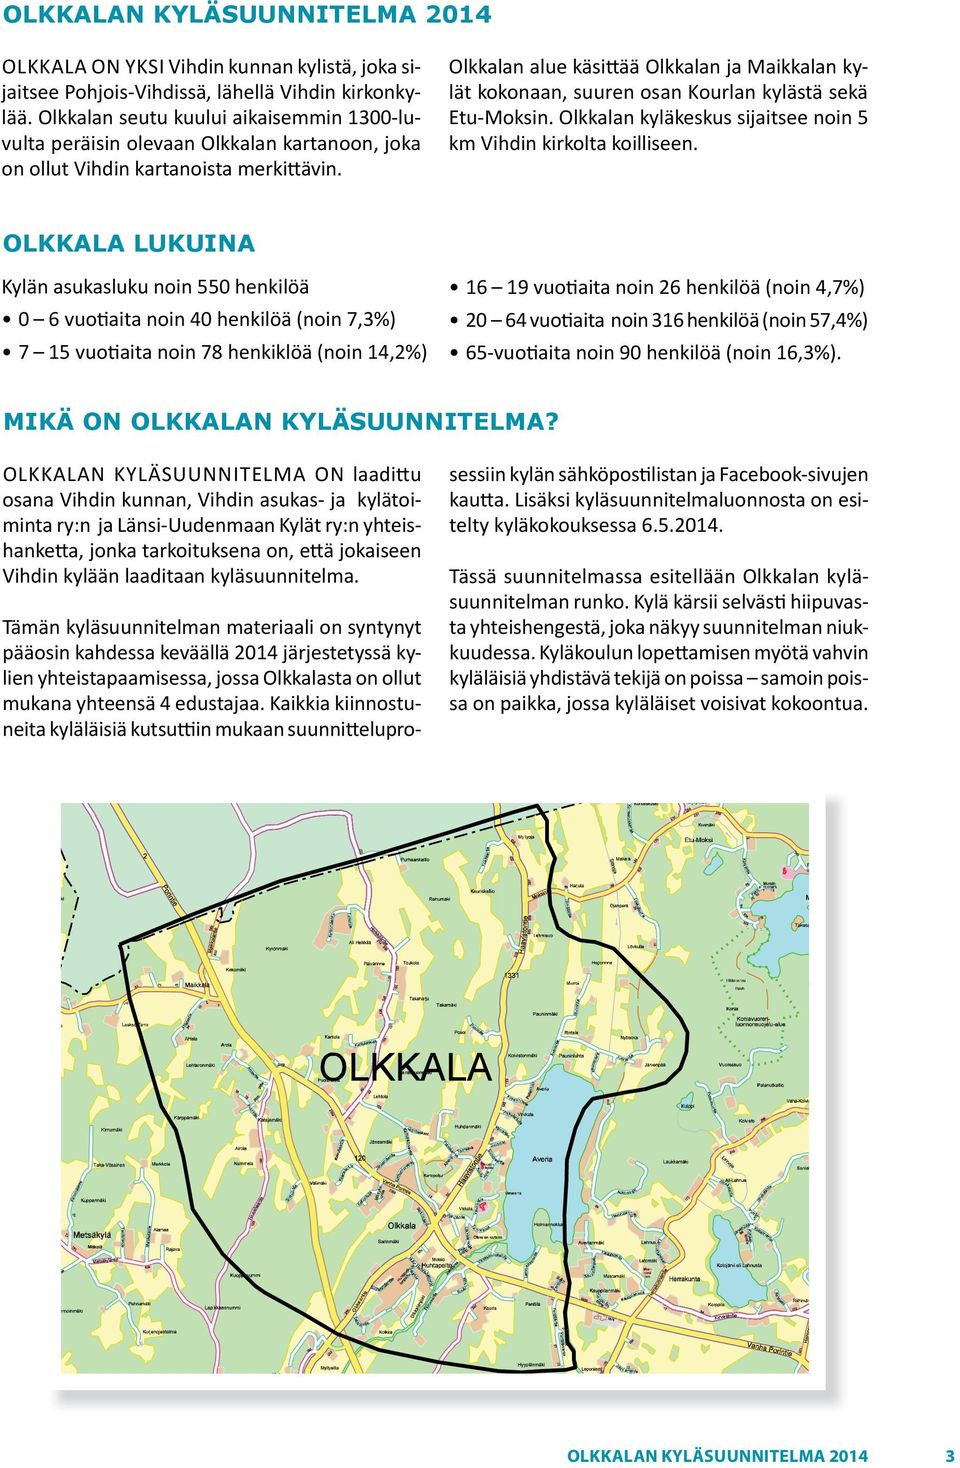 Olkkalan alue käsittää Olkkalan ja Maikkalan kylät kokonaan, suuren osan Kourlan kylästä sekä Etu Moksin. Olkkalan kyläkeskus sijaitsee noin 5 km Vihdin kirkolta koilliseen.